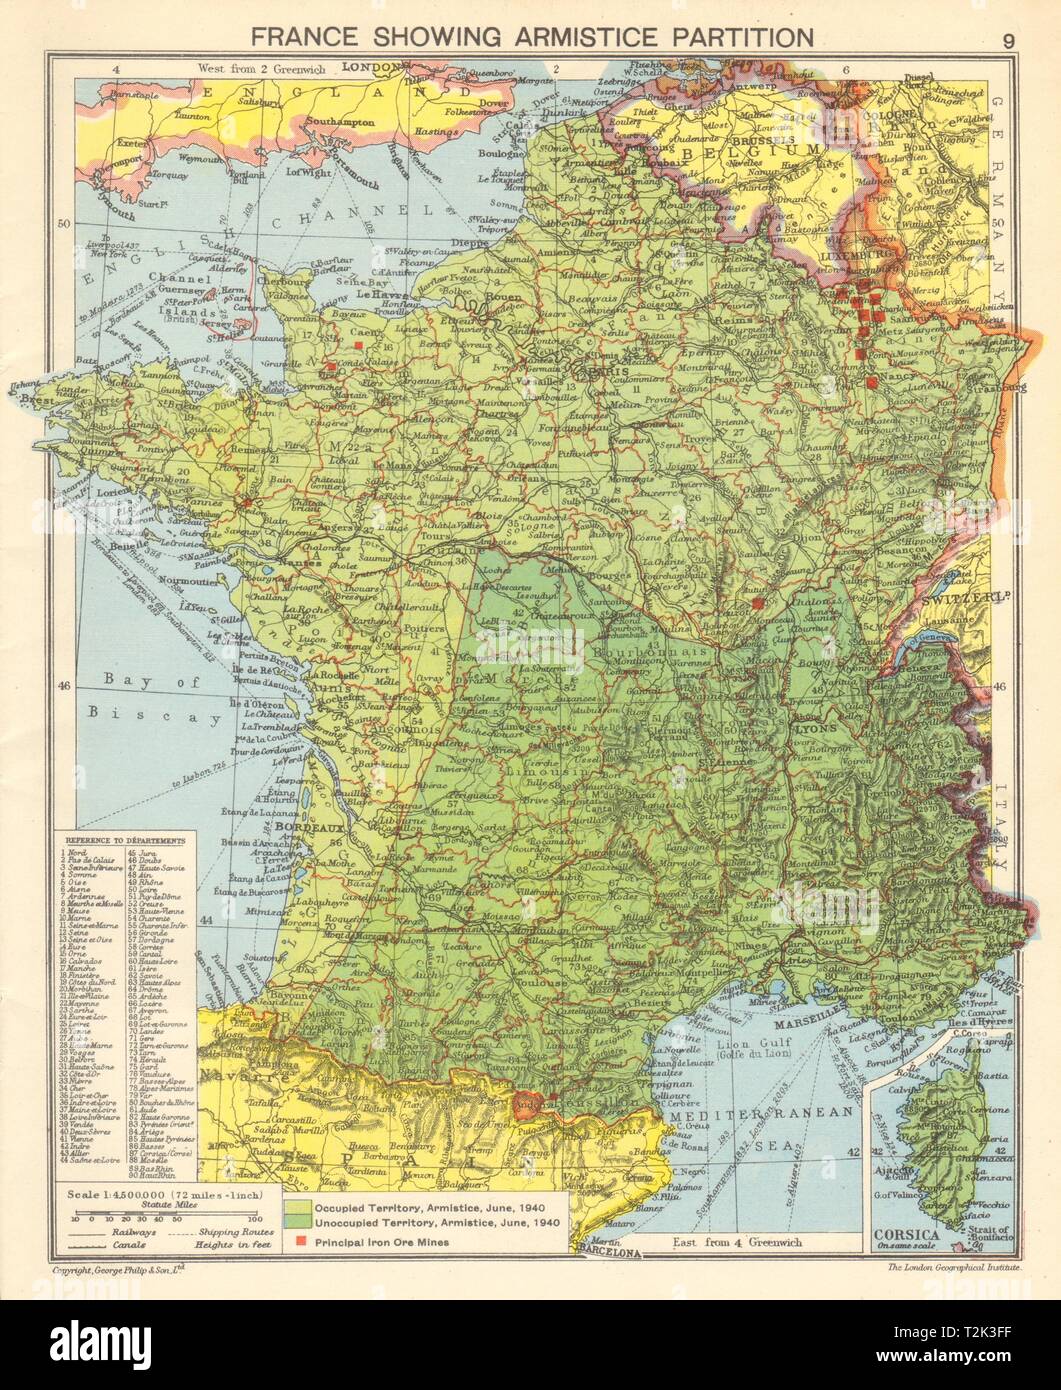 Seconde Guerre mondiale en France. Vichy et la France occupée par les Nazis. 1942 Armistice carte ancienne Banque D'Images